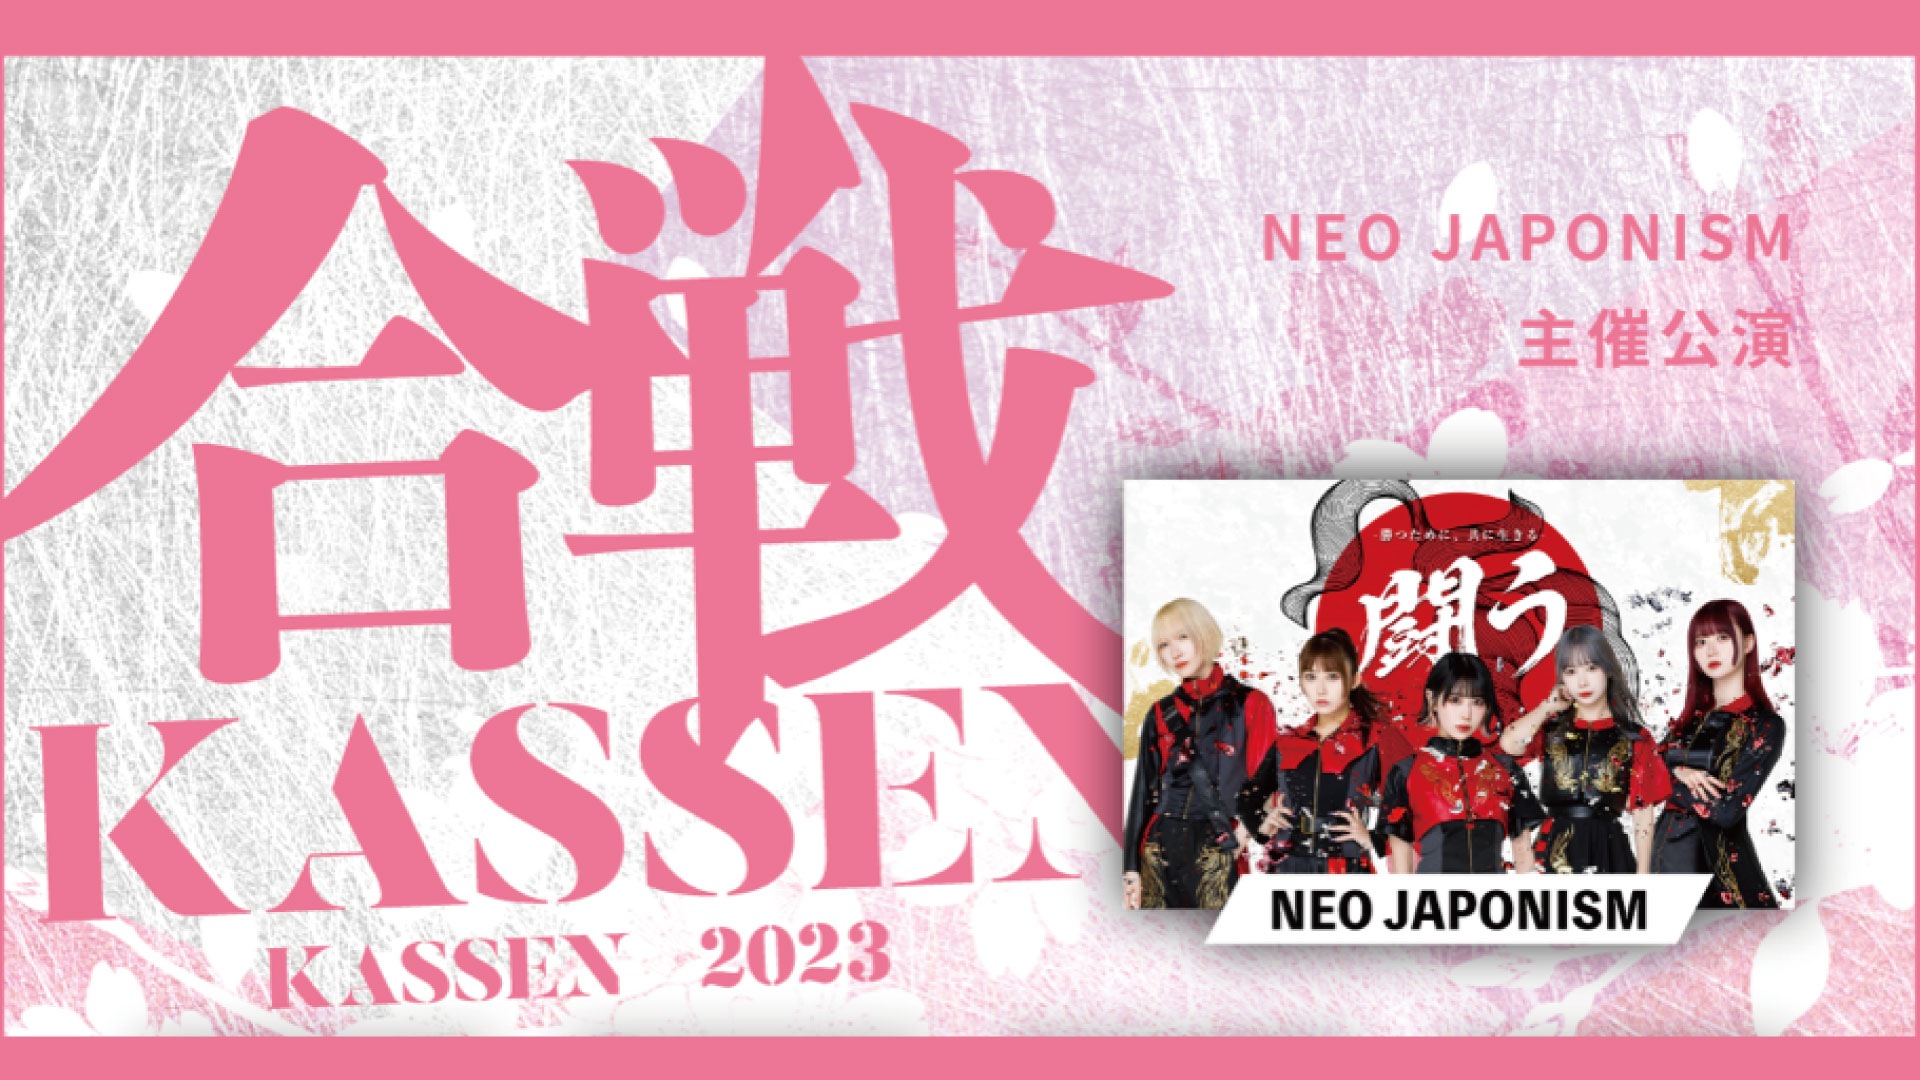 NEO JAPONISM 主催公演「KASSEN」